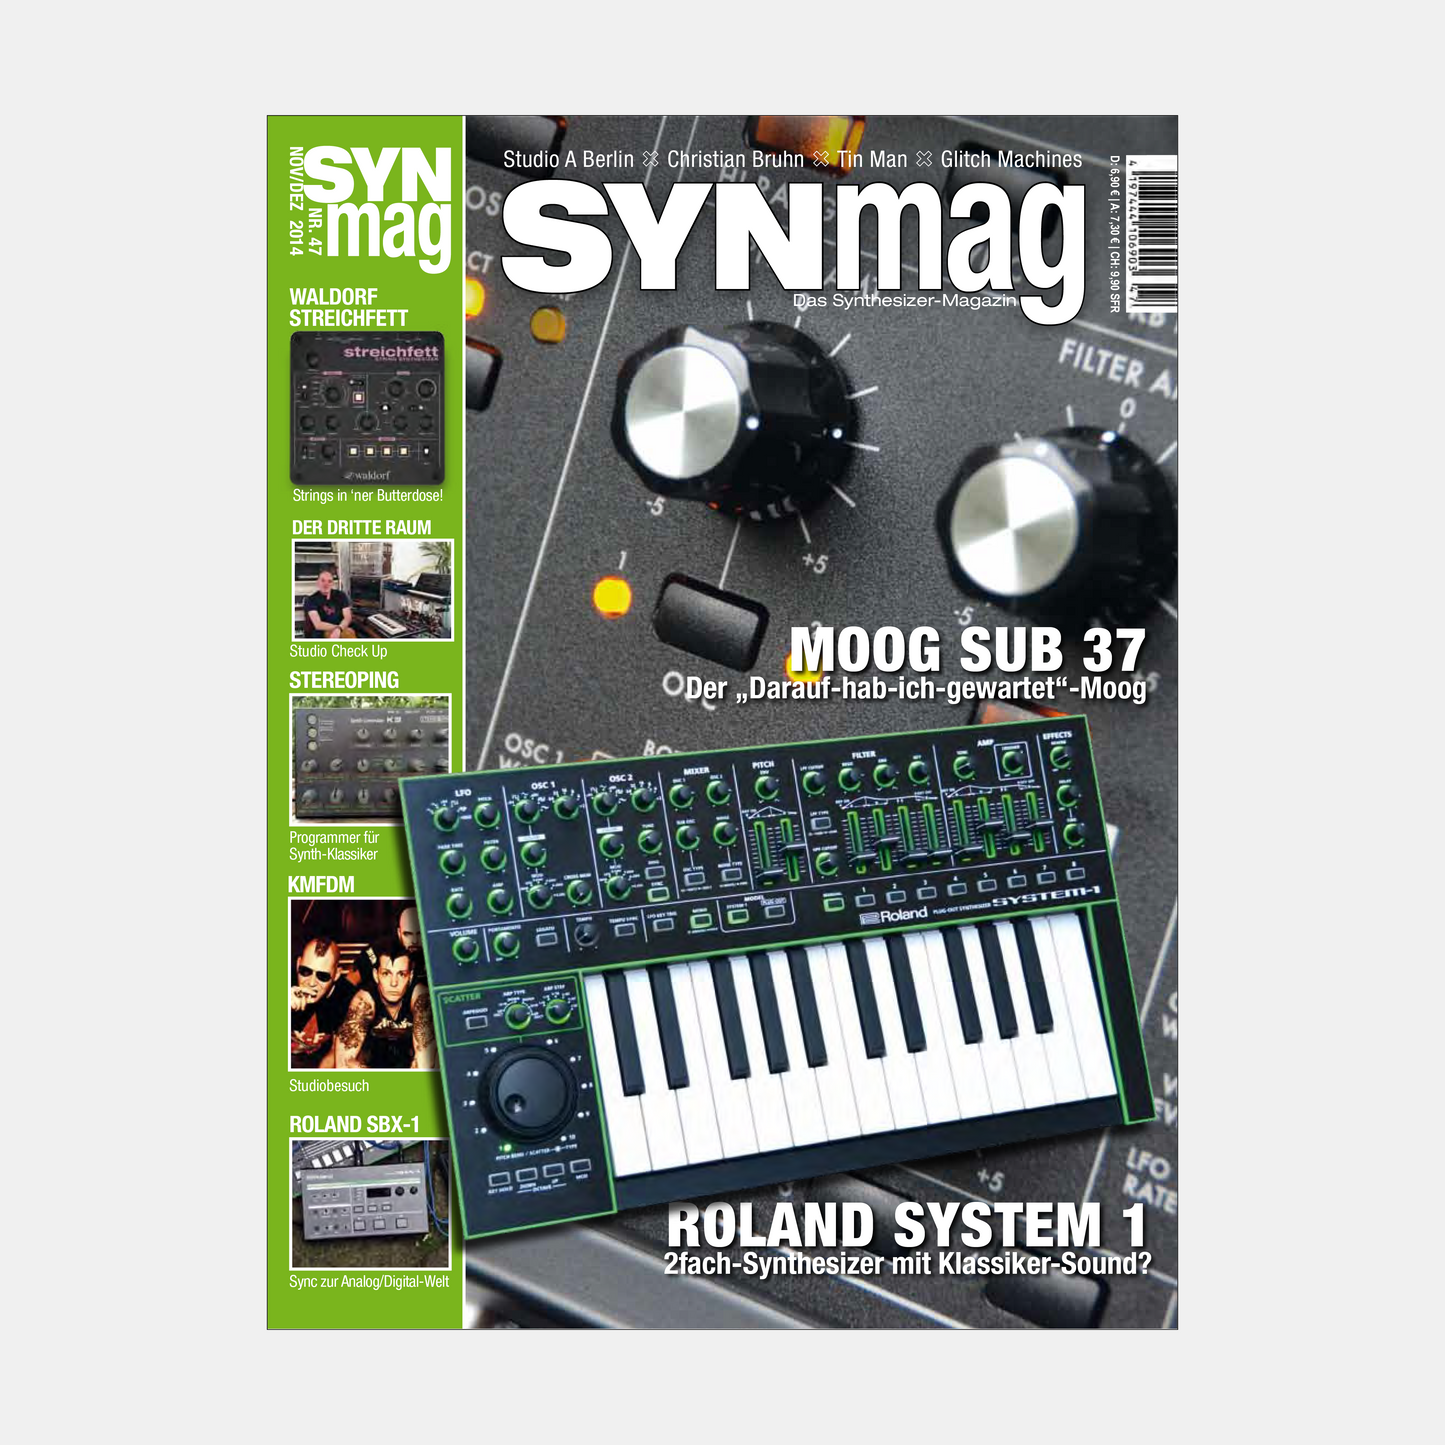 Synmag | Ausgaben 46 bis 50 im Paket | ePaper